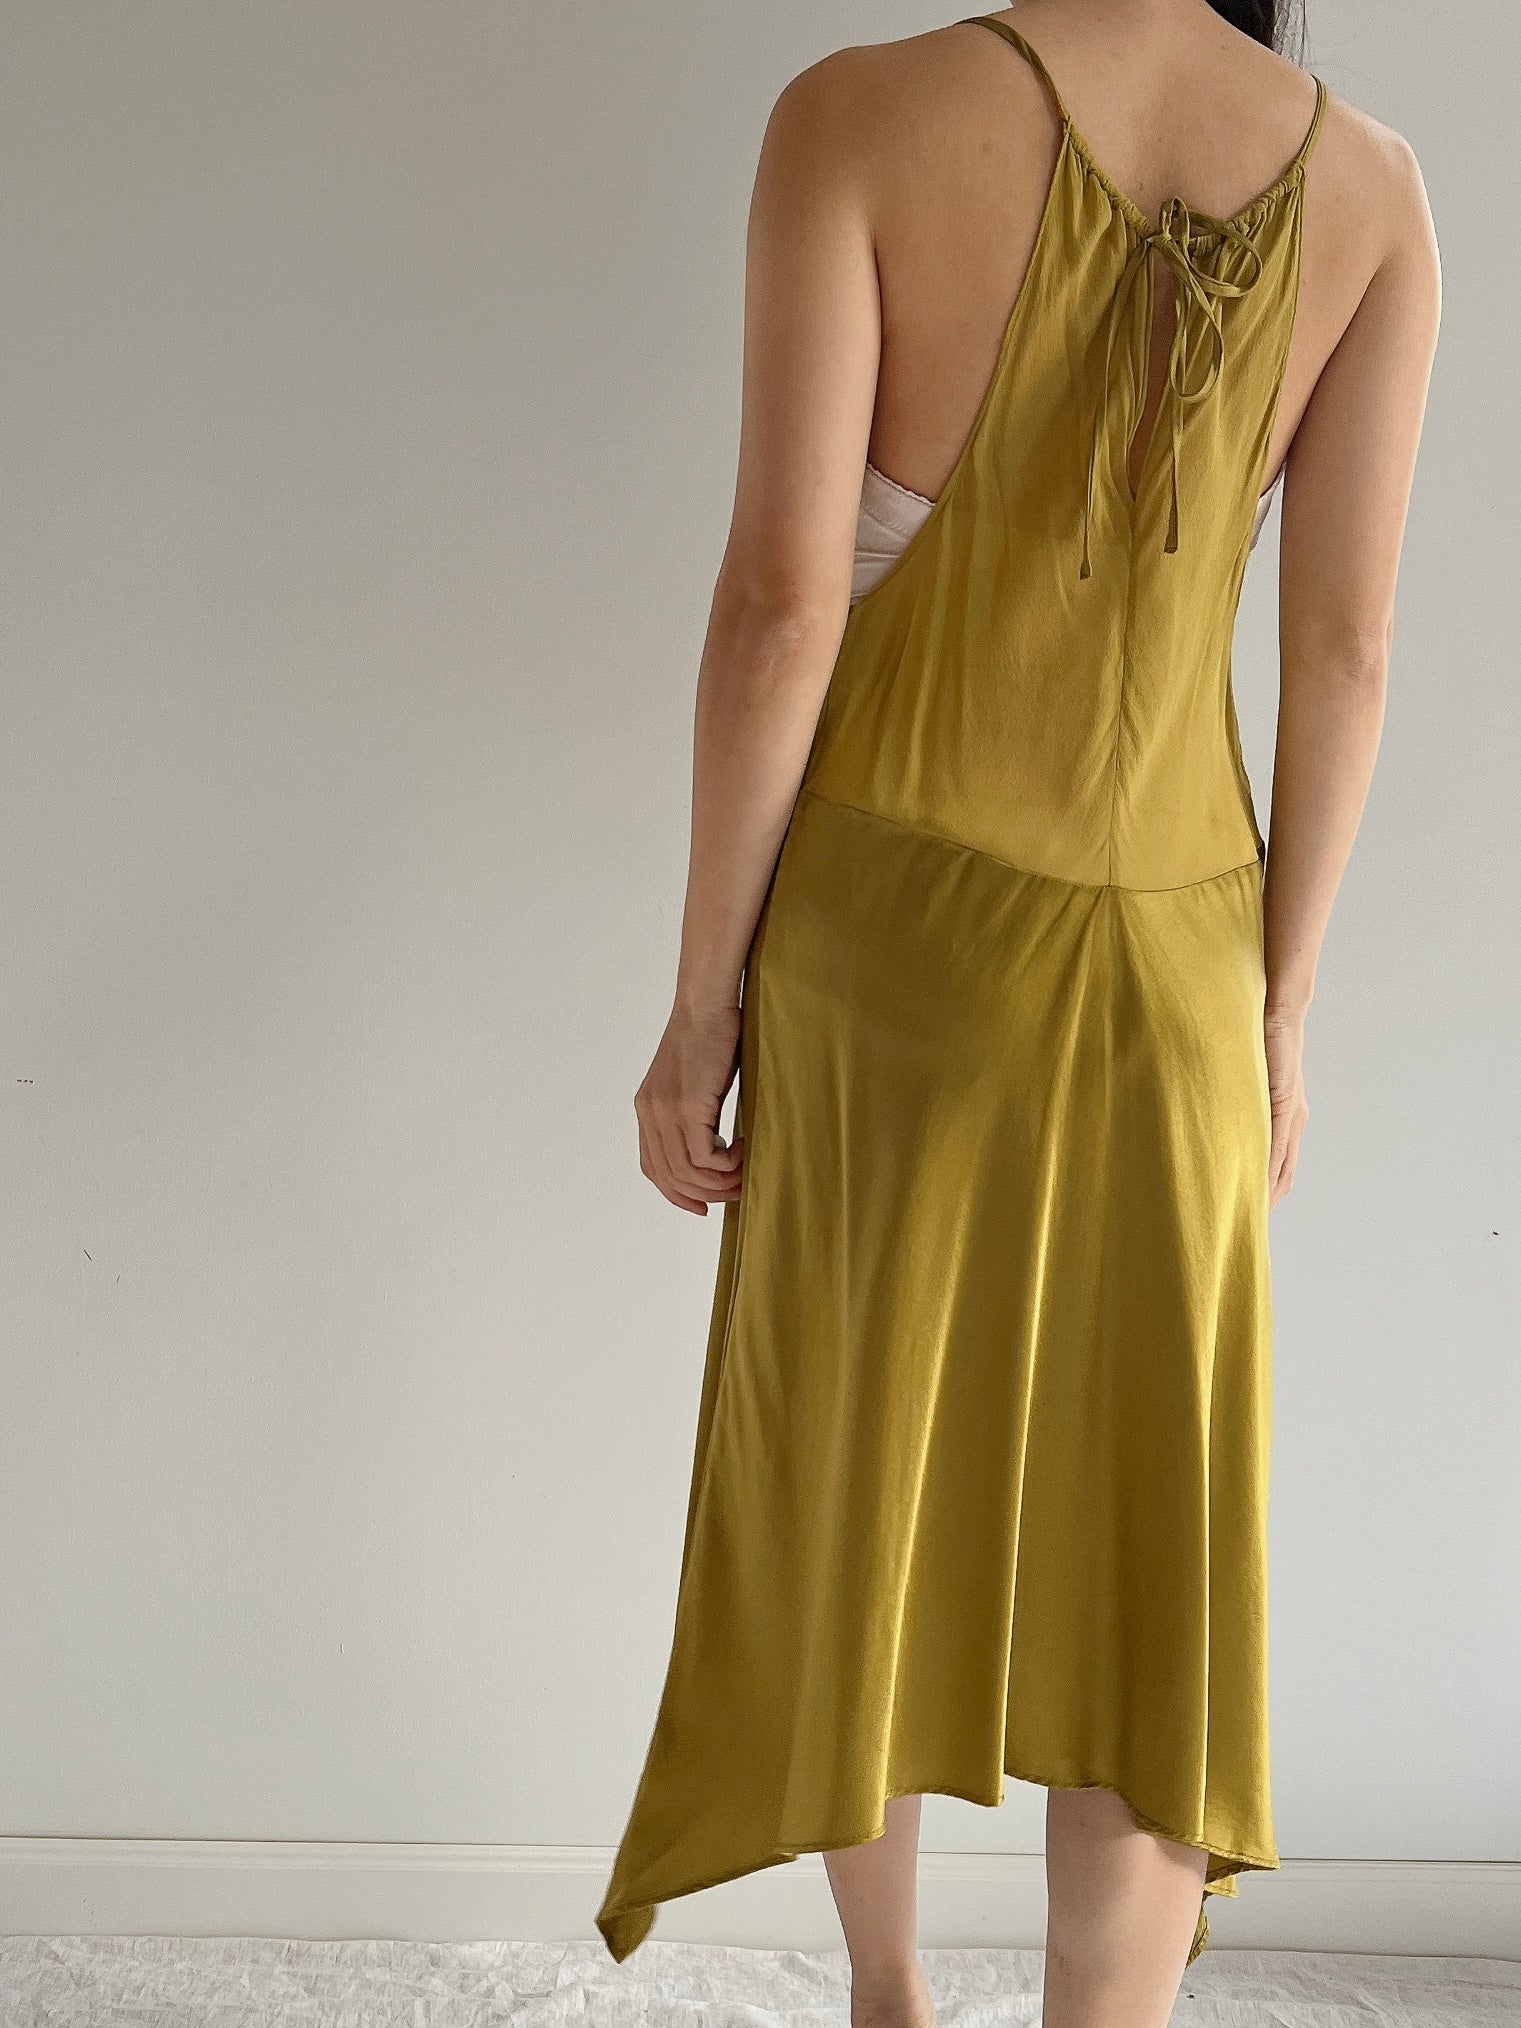 Vintage Moss Green Silk Dress - M | G O S S A M E R